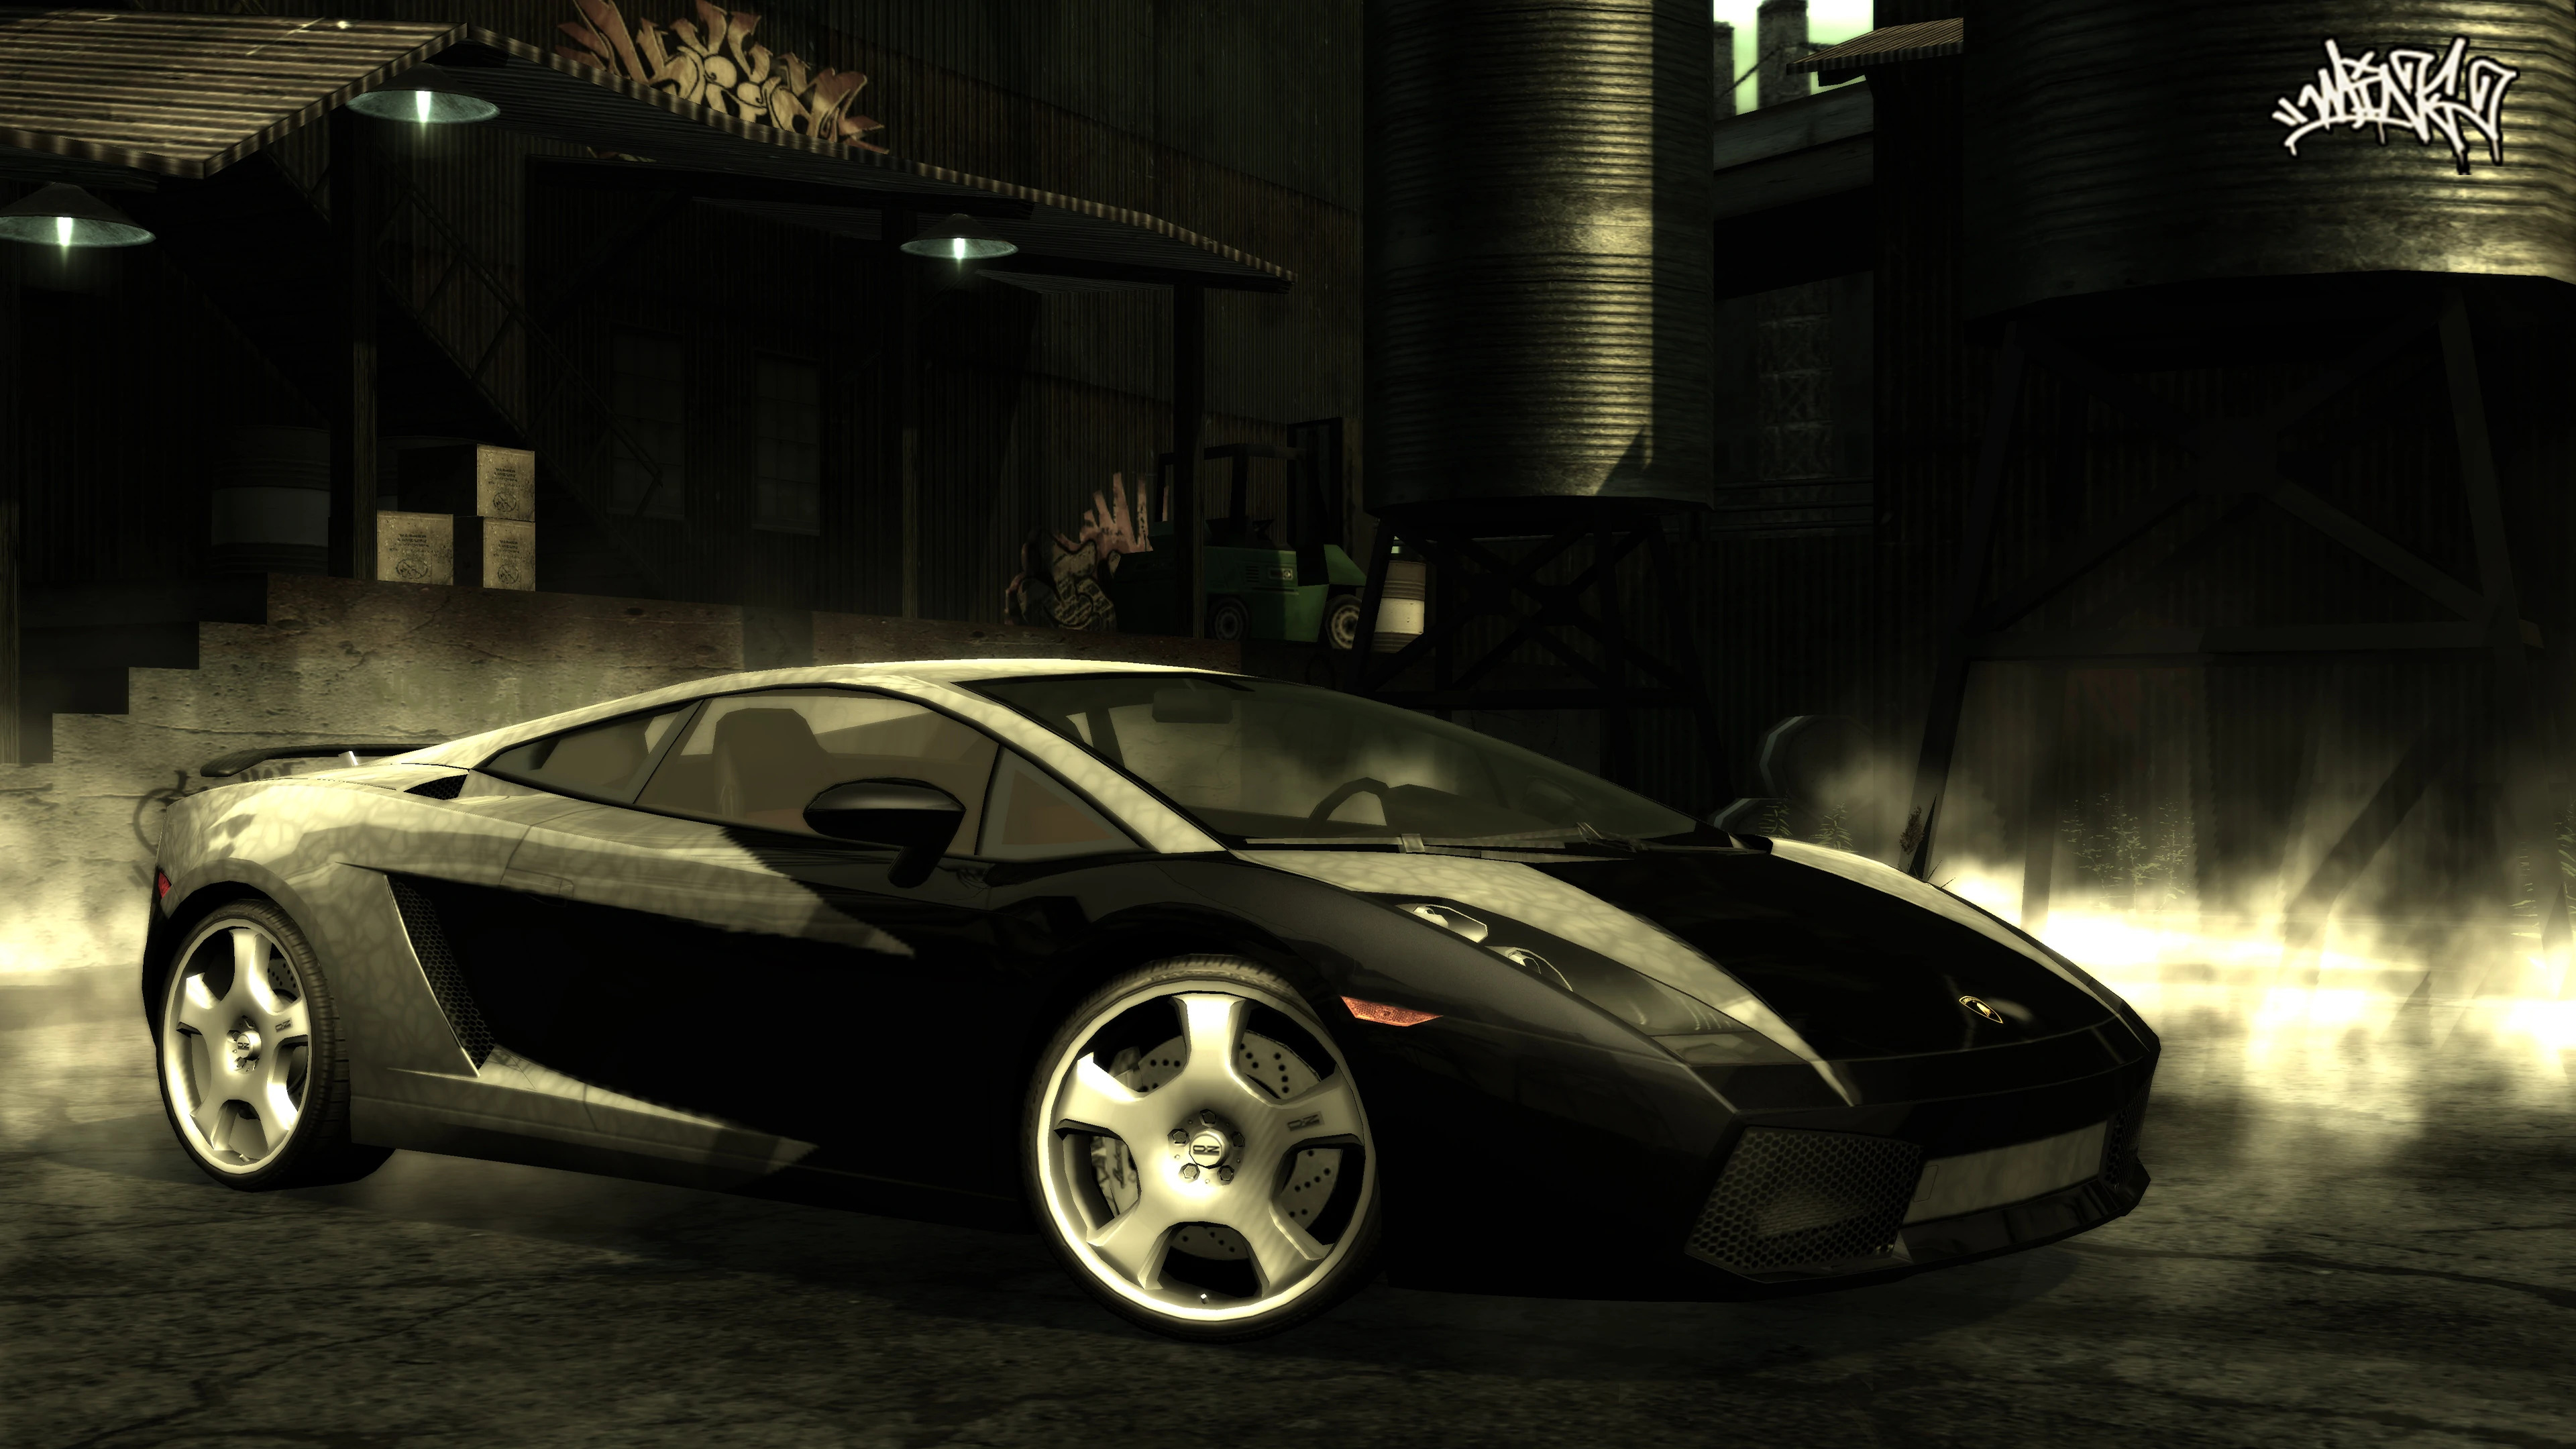 Blacklist#6 - Lamborghini Gallardo